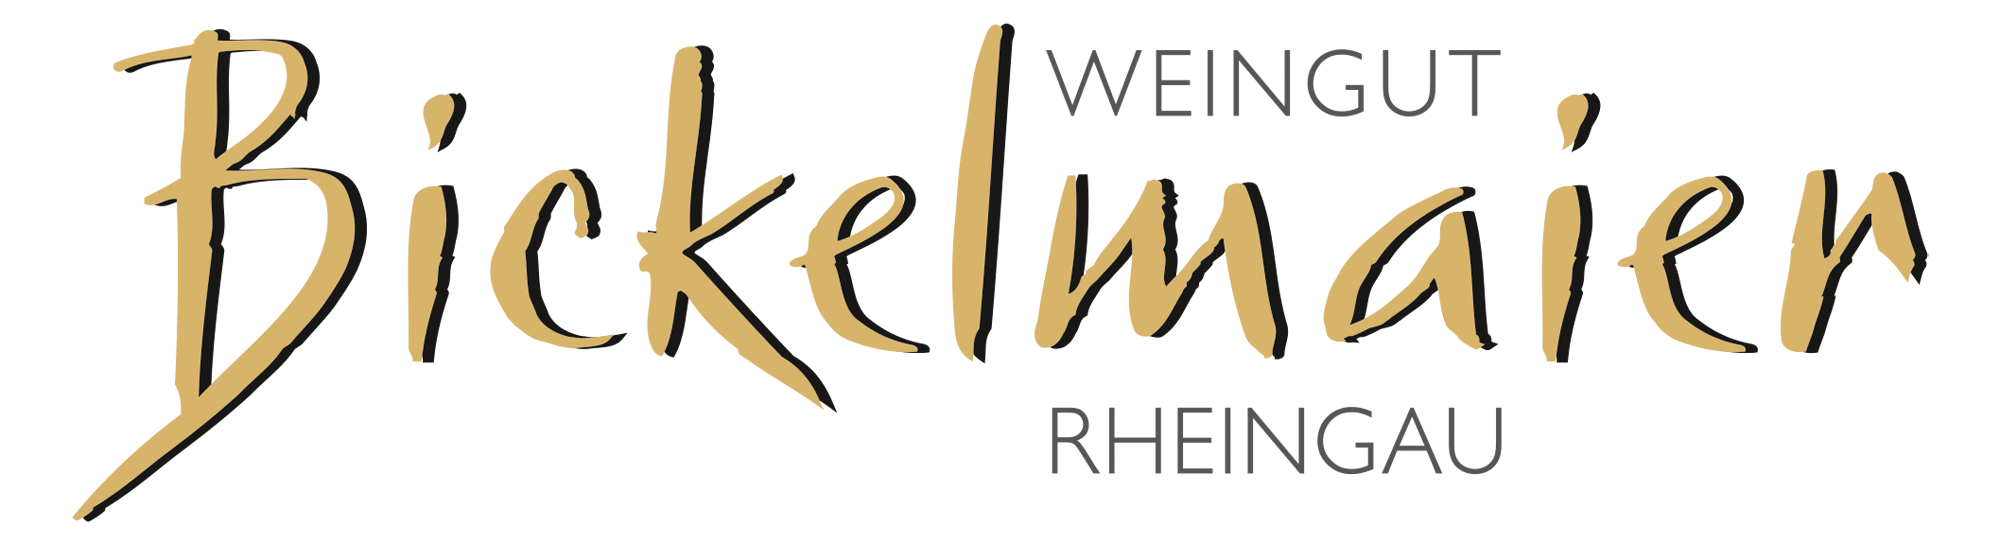 Weingut Bickelmaier-Logo